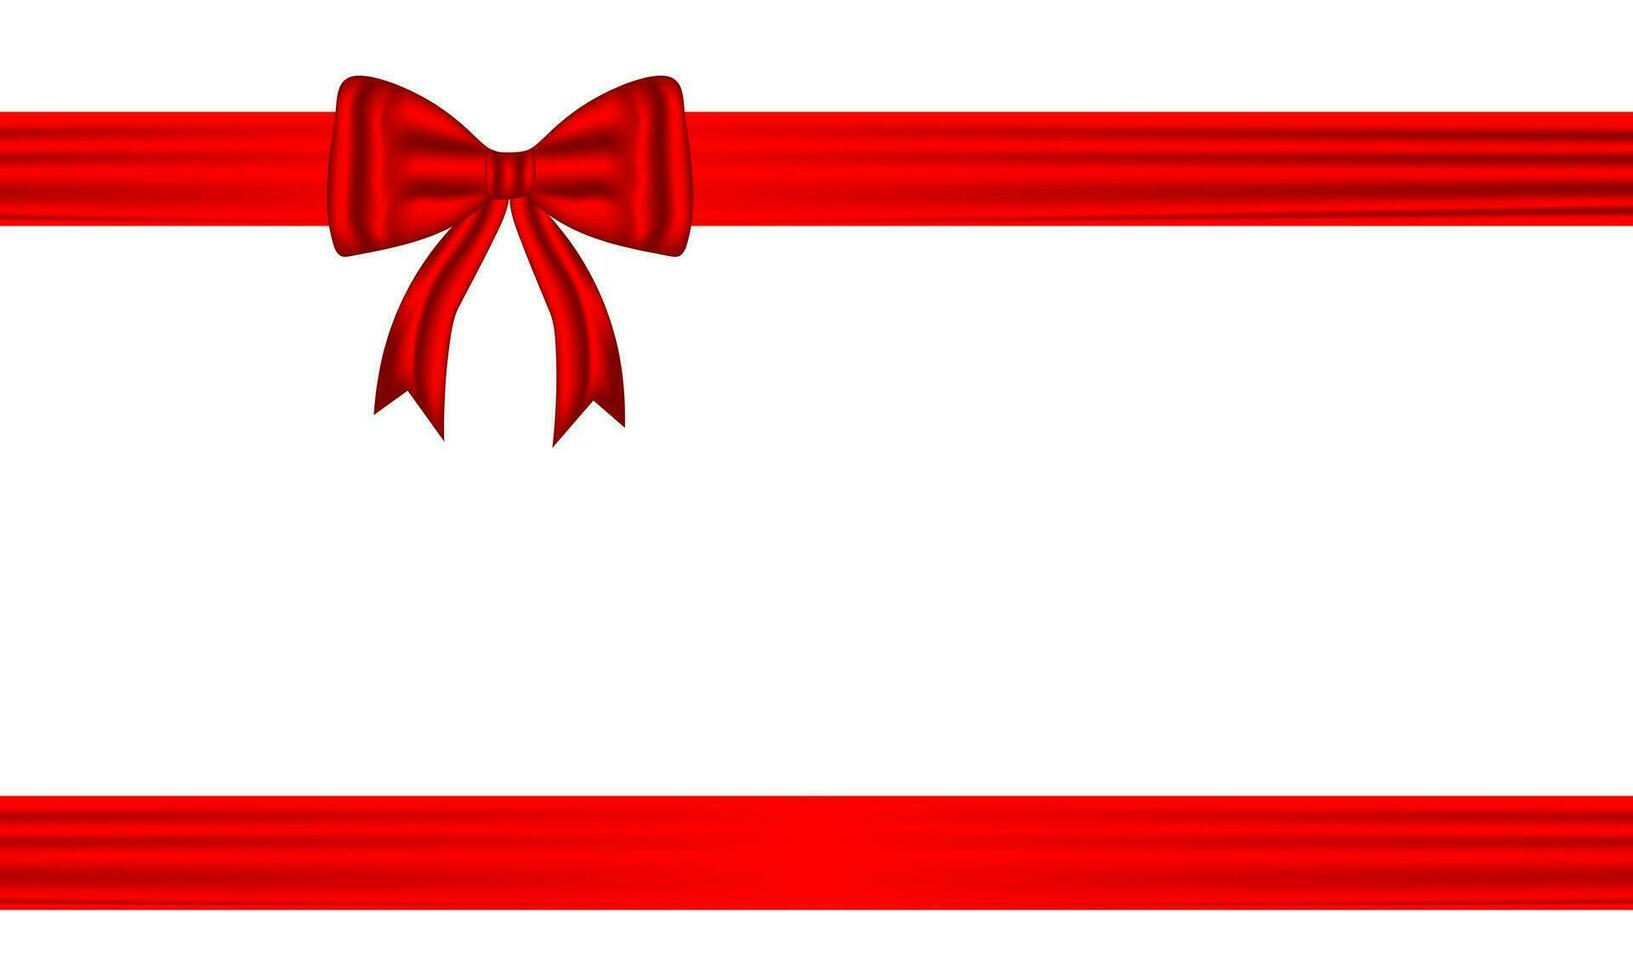 rouge arc et soie luxe éléments avec horizontal et verticale traverser ruban de fête décor pour vacances élégant cadeau carte ruban pour décorer mariage cartes, ou site Internet vecteur